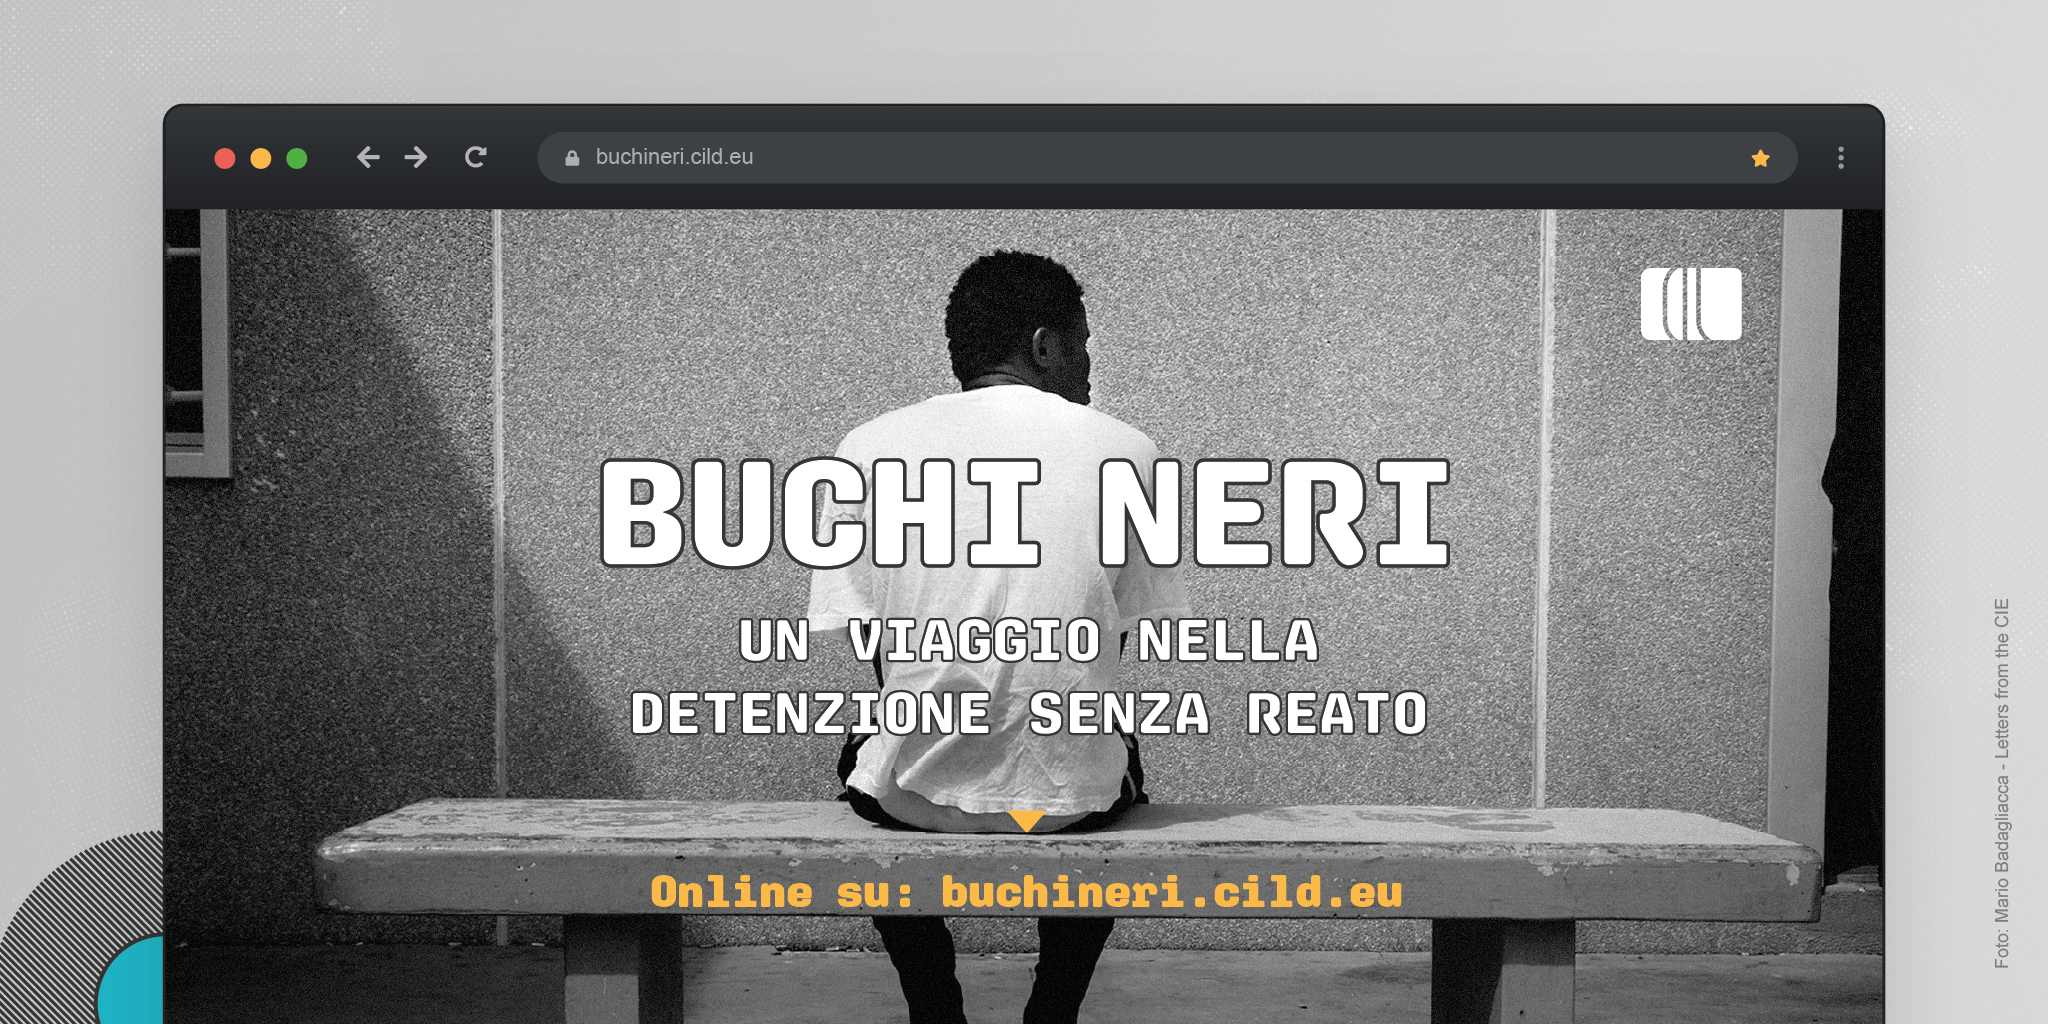 Online Buchi neri, viaggio nella detenzione senza reato in Italia